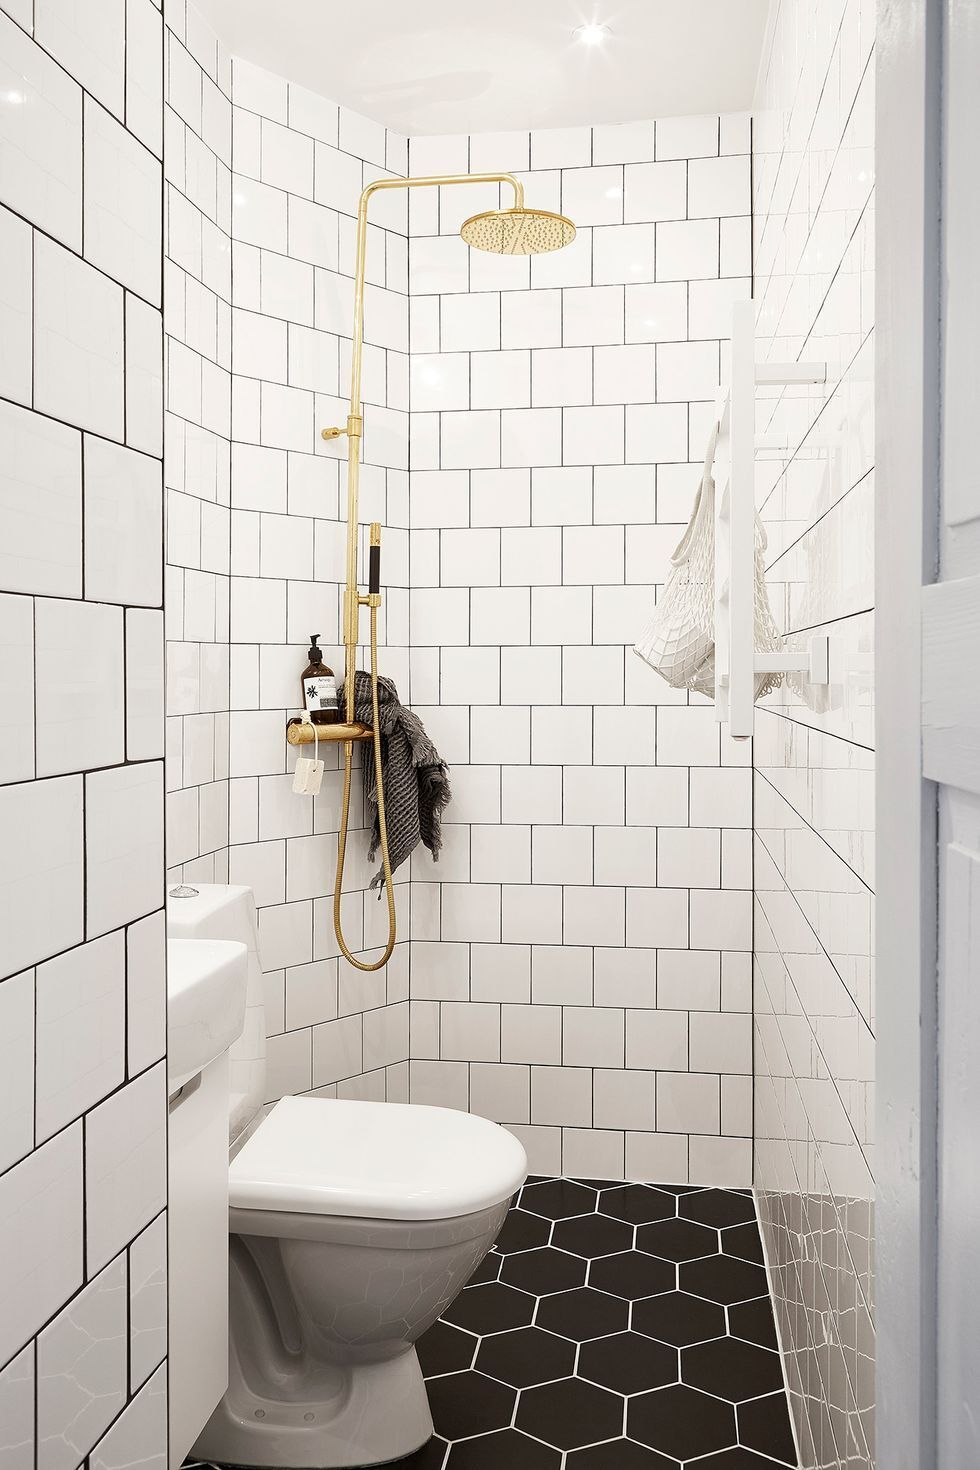 hình ảnh phòng tắm nhỏ với gạch ốp tường màu trắng, gạch nền màu đen, vòi tắm hoa sen bằng đồng sáng bóng